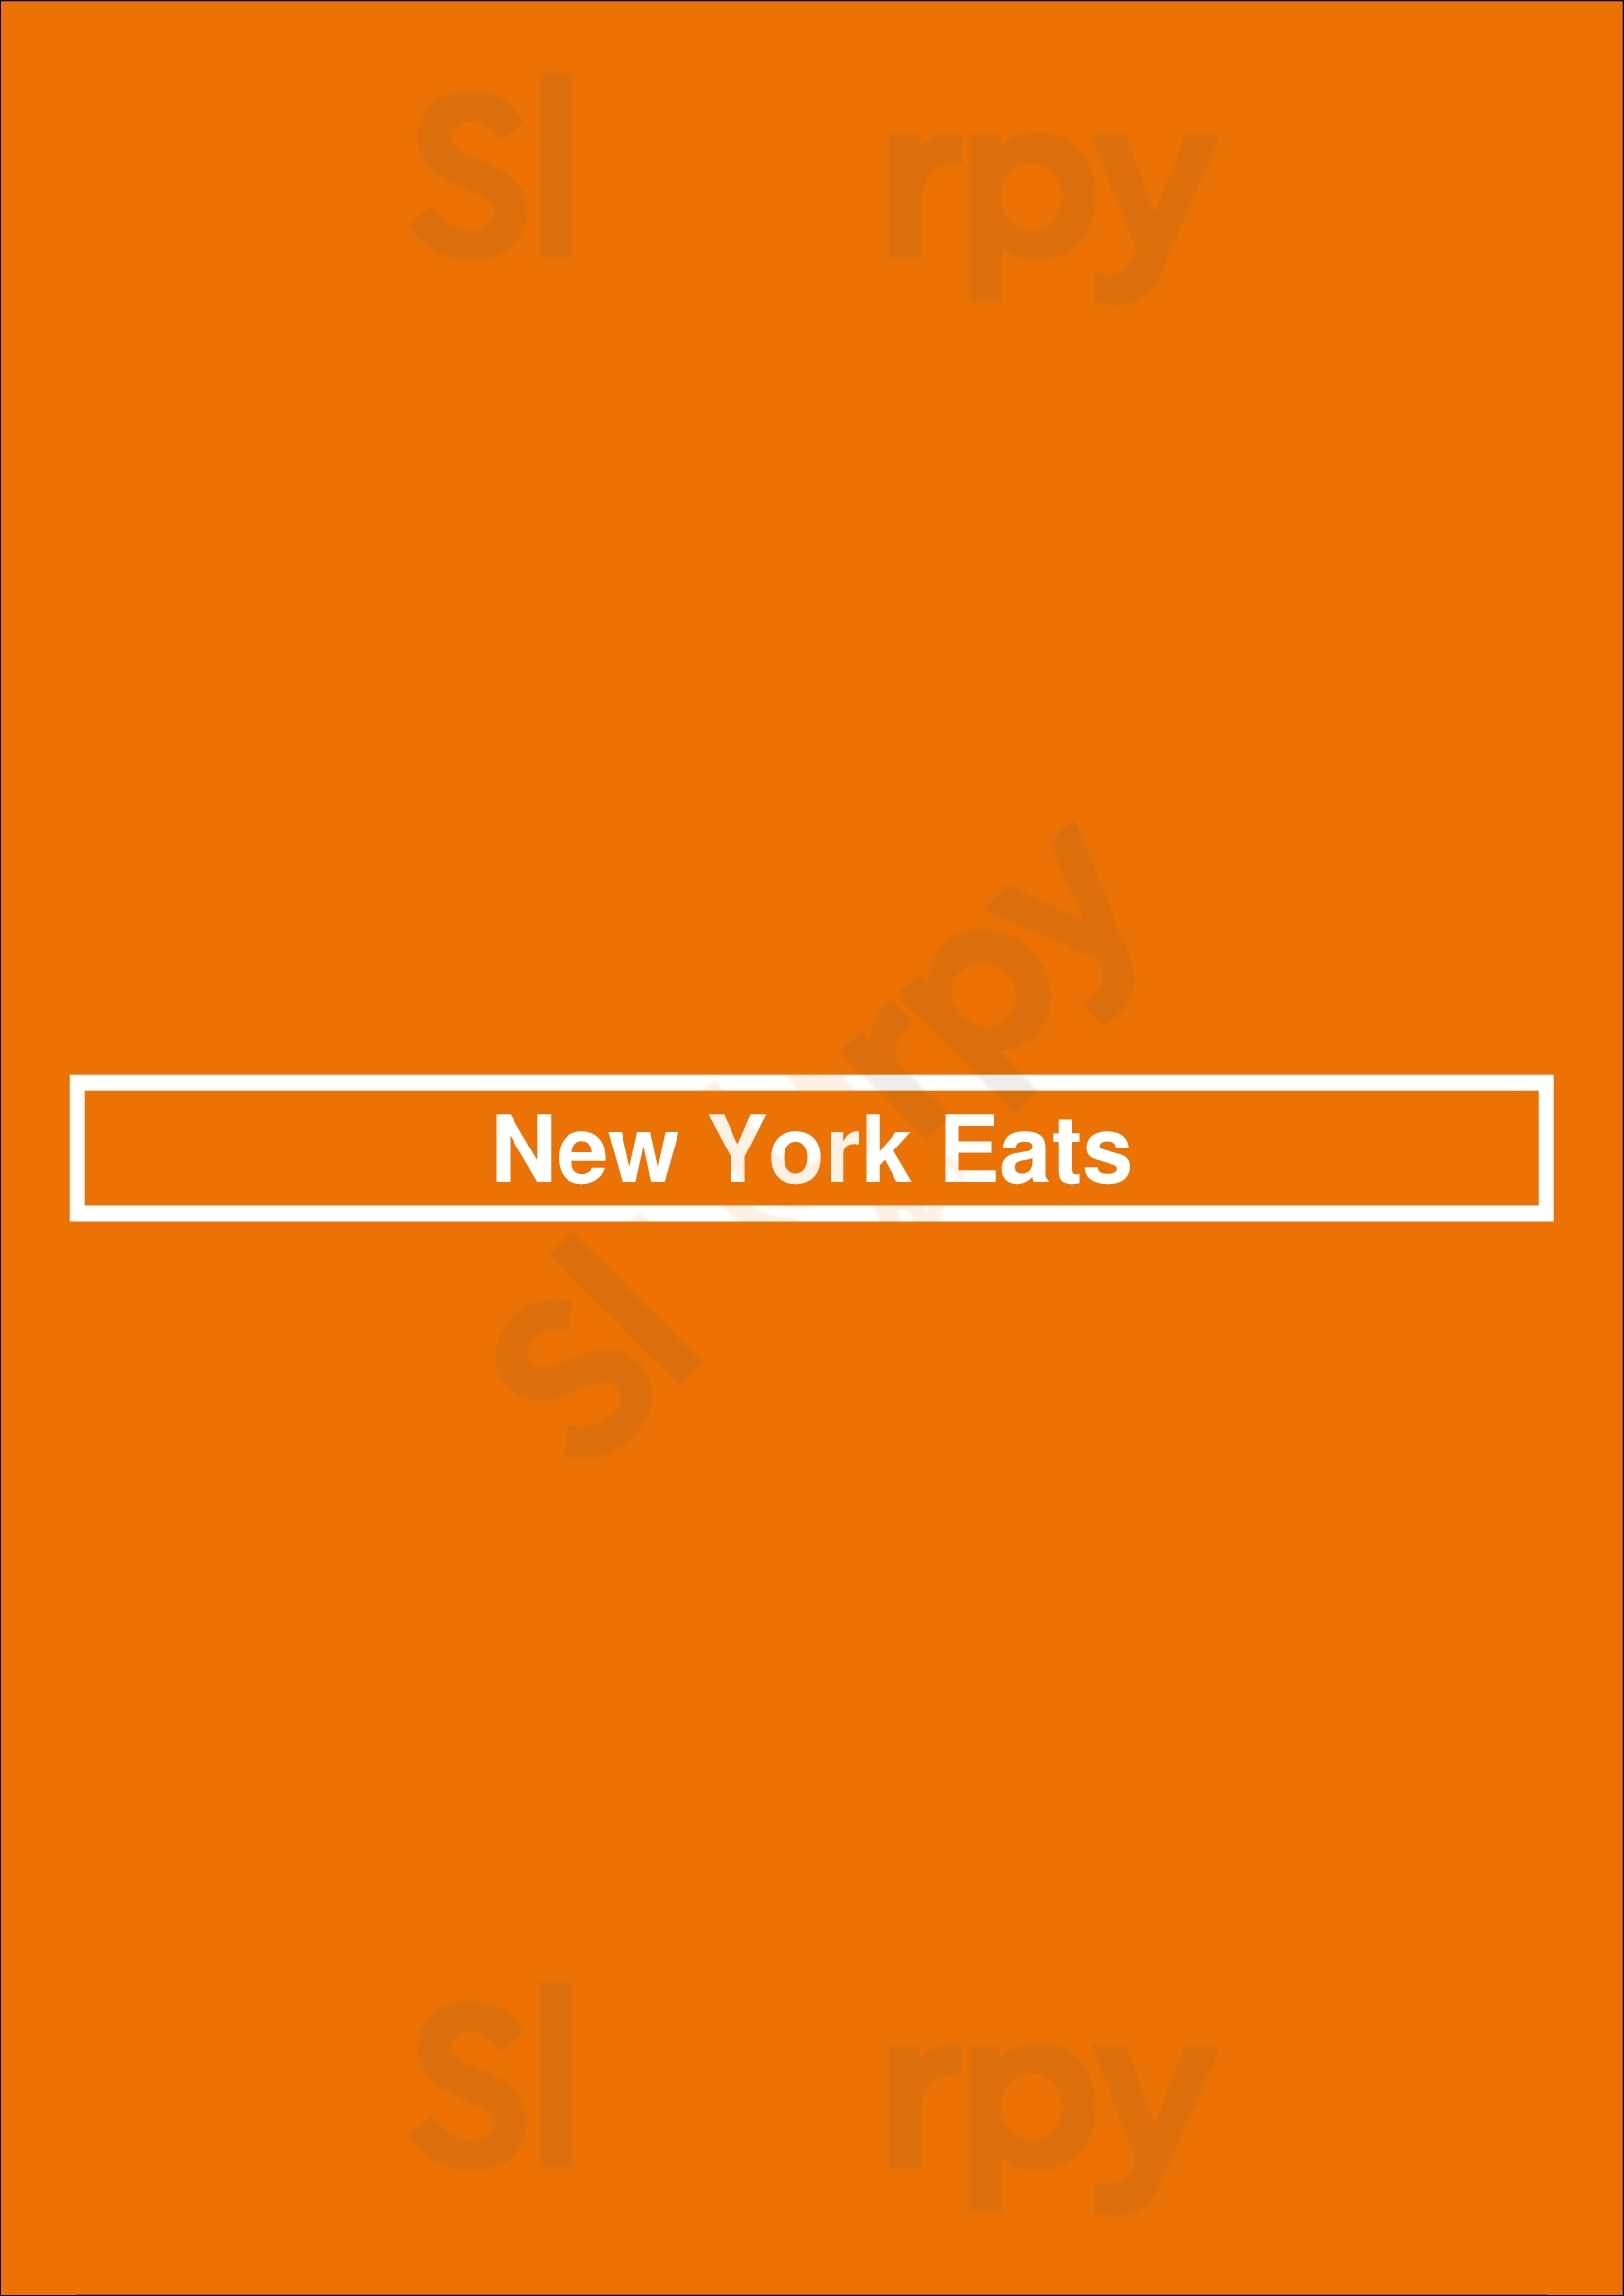 New York Eats Arlington Menu - 1